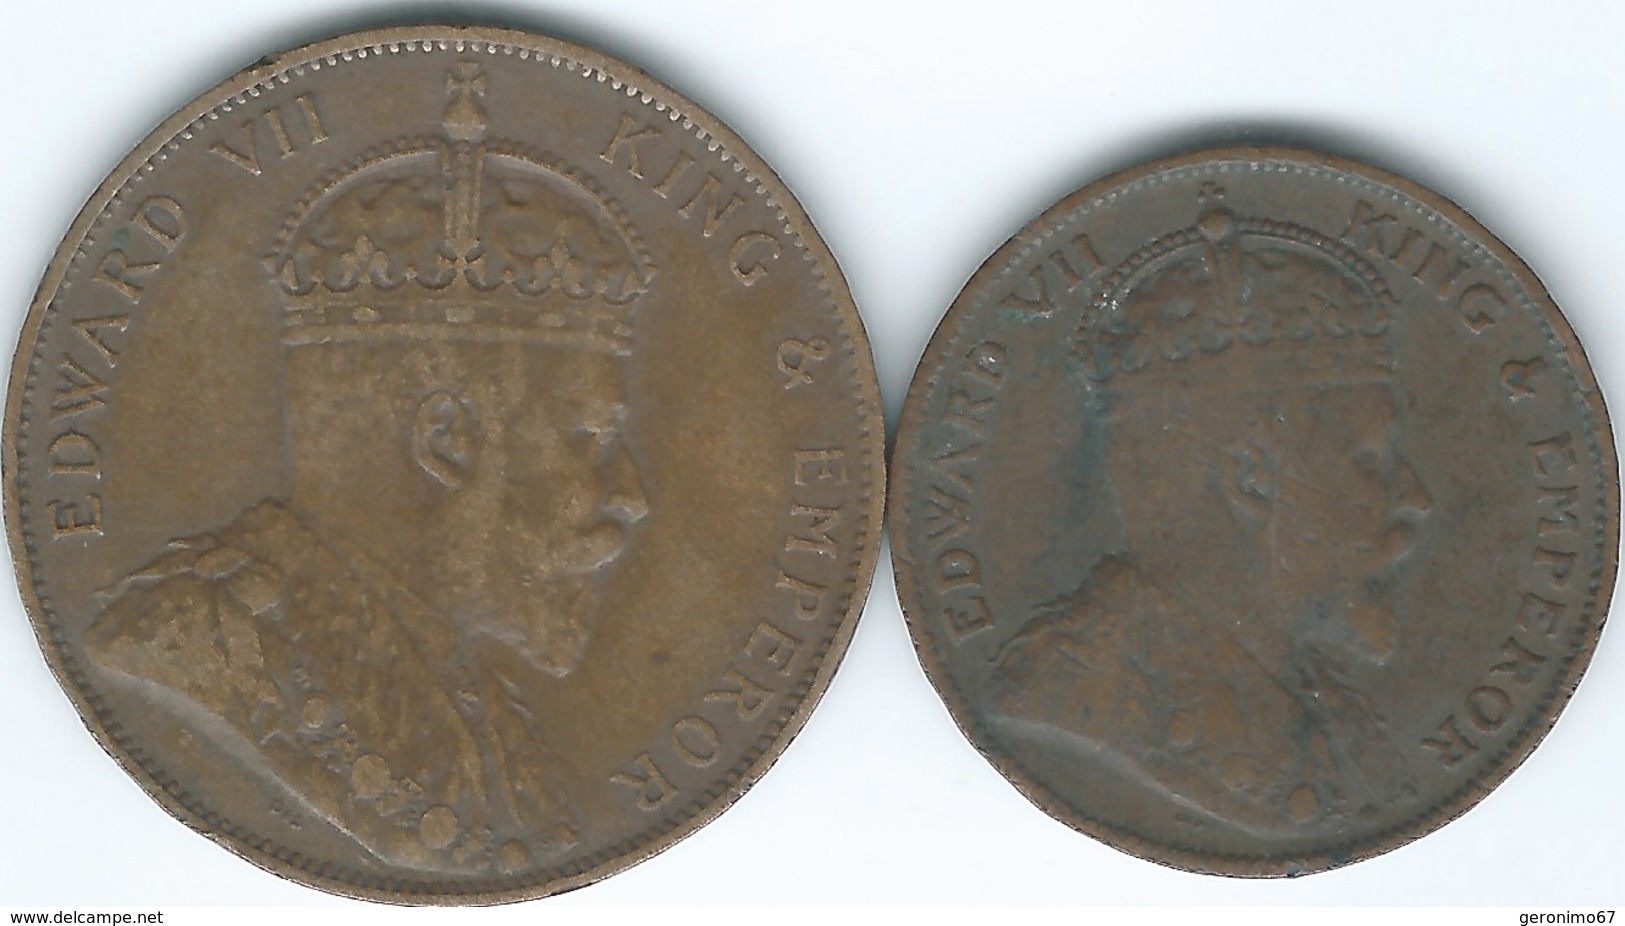 Jersey - Edward VII - 1/24 - 1909 (KM9) & 1/12 Shilling - 1909 (KM10) - Jersey